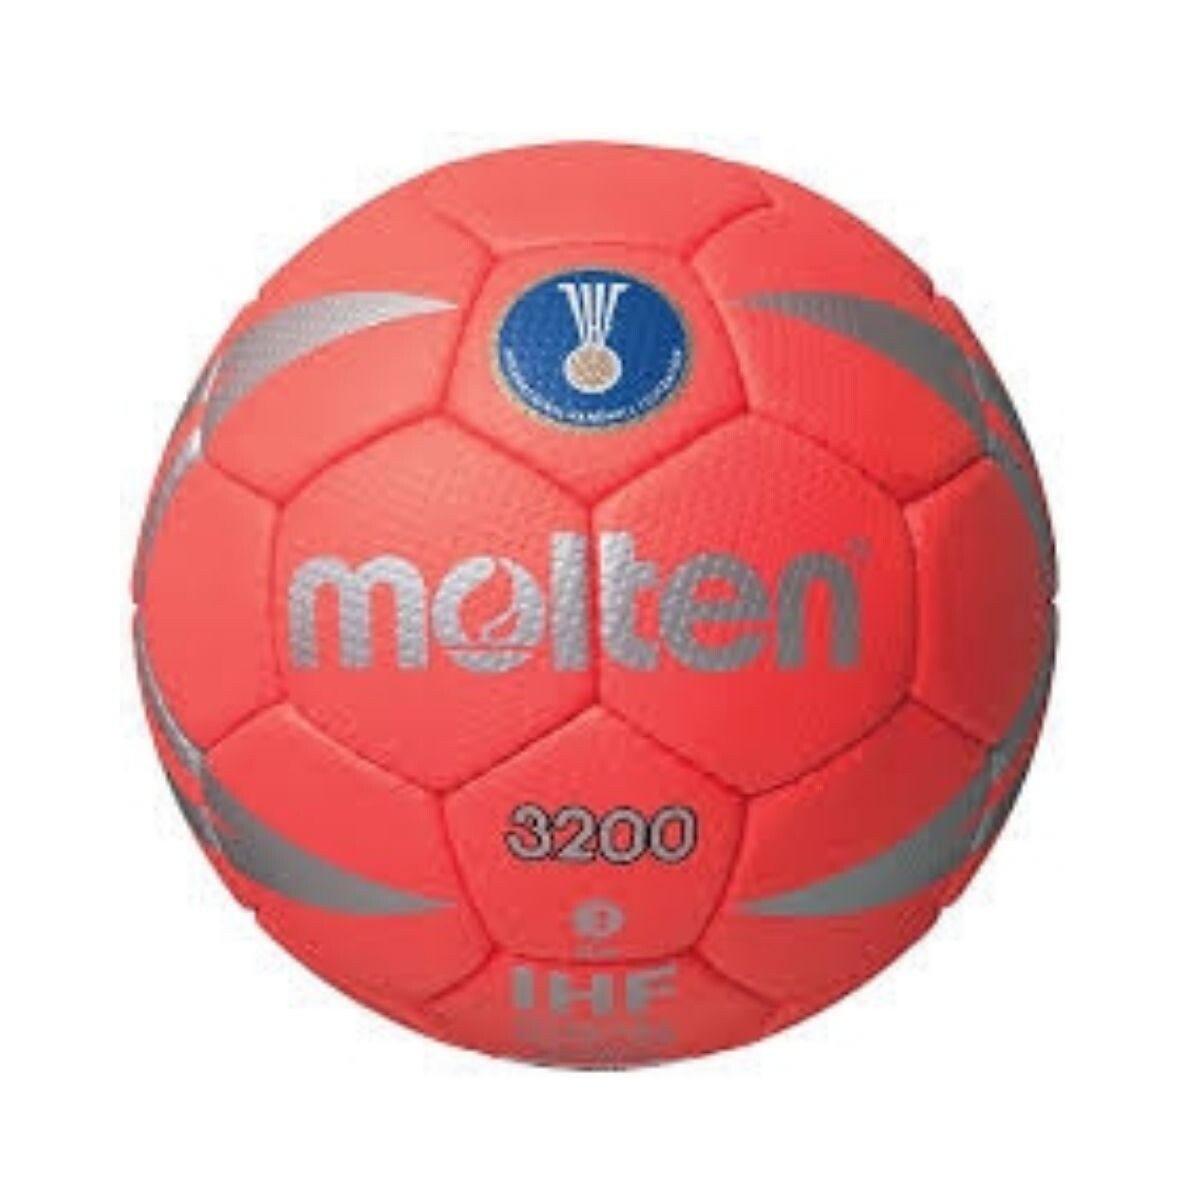 Pelota Molten Handball Nº1 H1X3200 - S/C 